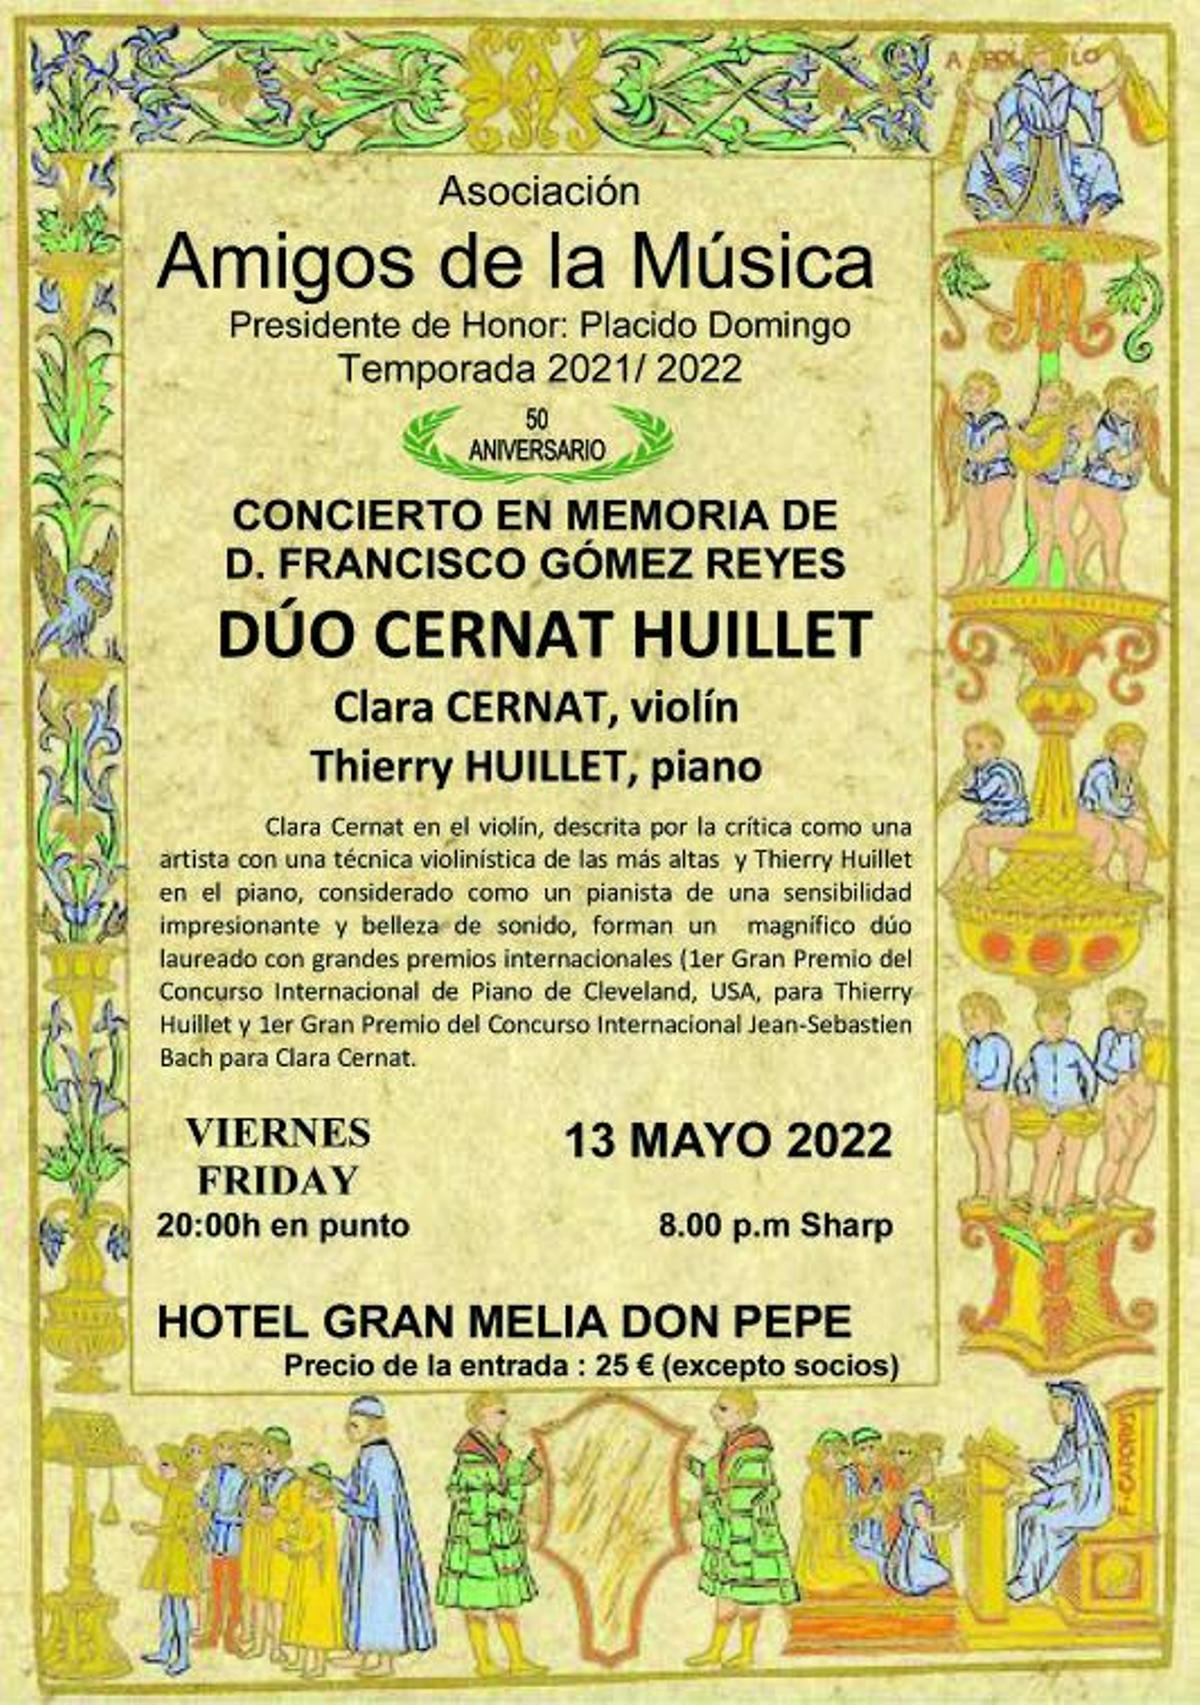 Cartel anunciador del concierto en homenaje a Francisco Gómez Reyes